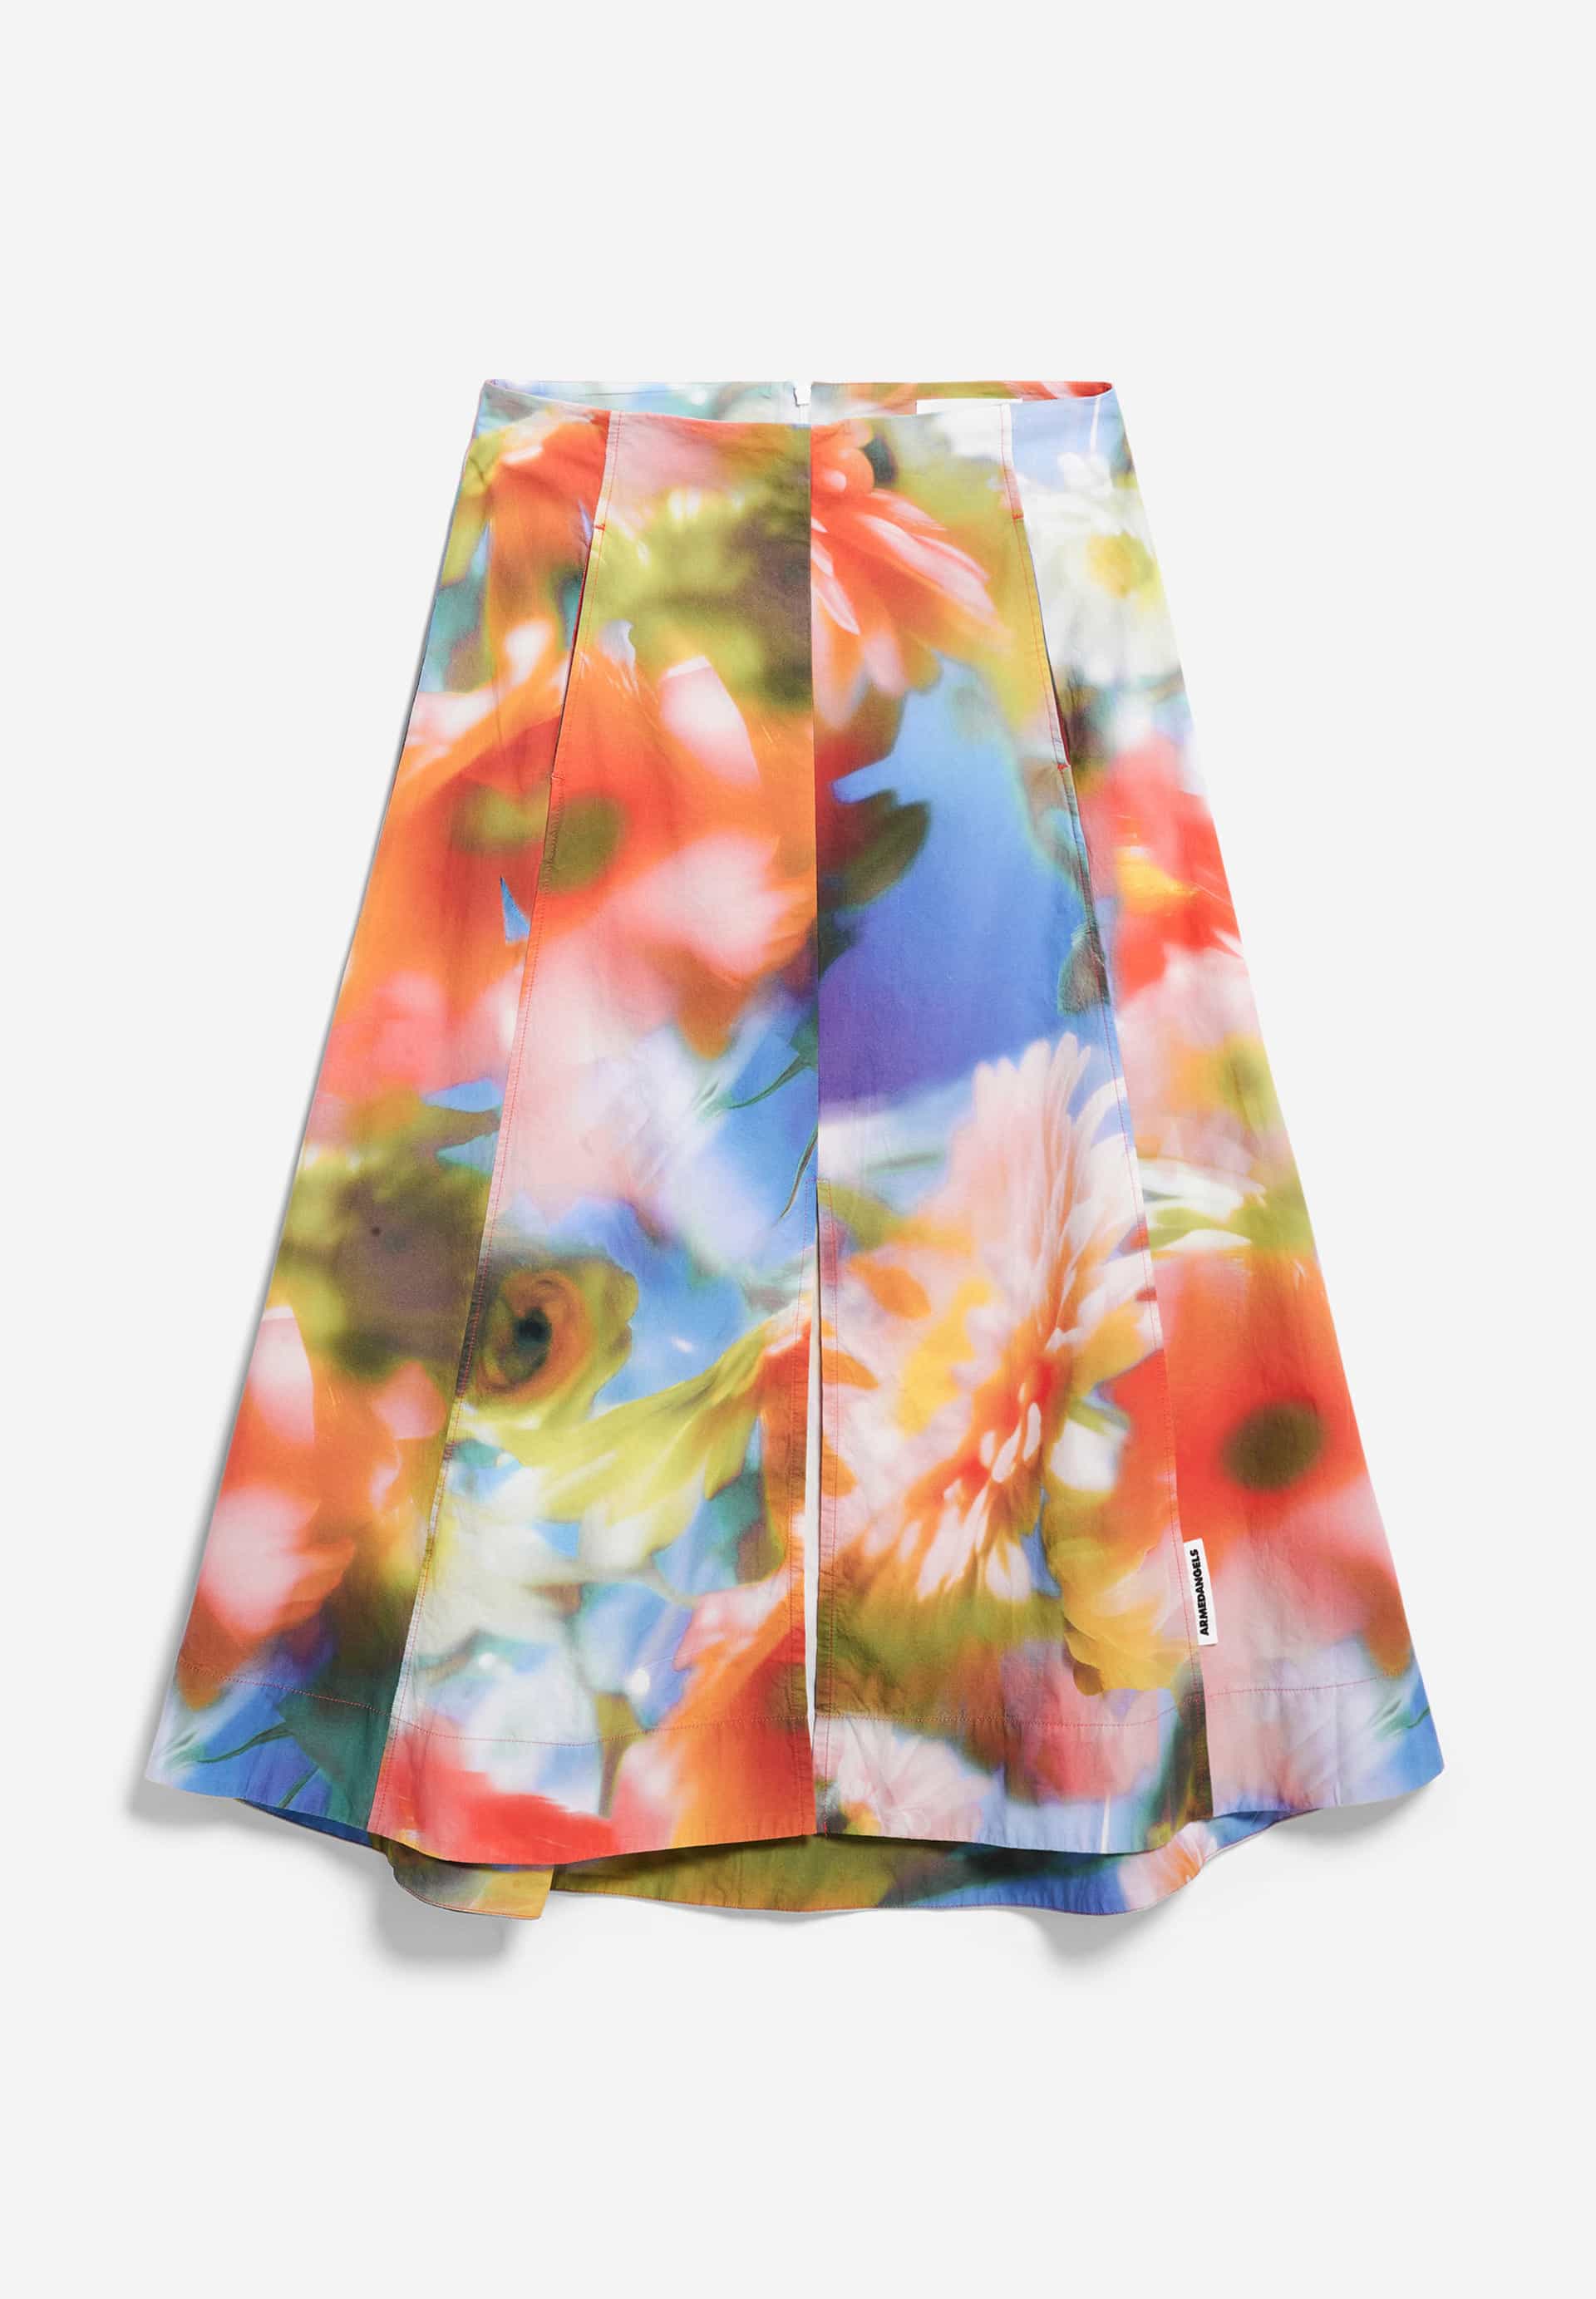 DELIAA NOSTALGIAA Woven Skirt Regular Fit made of Organic Cotton